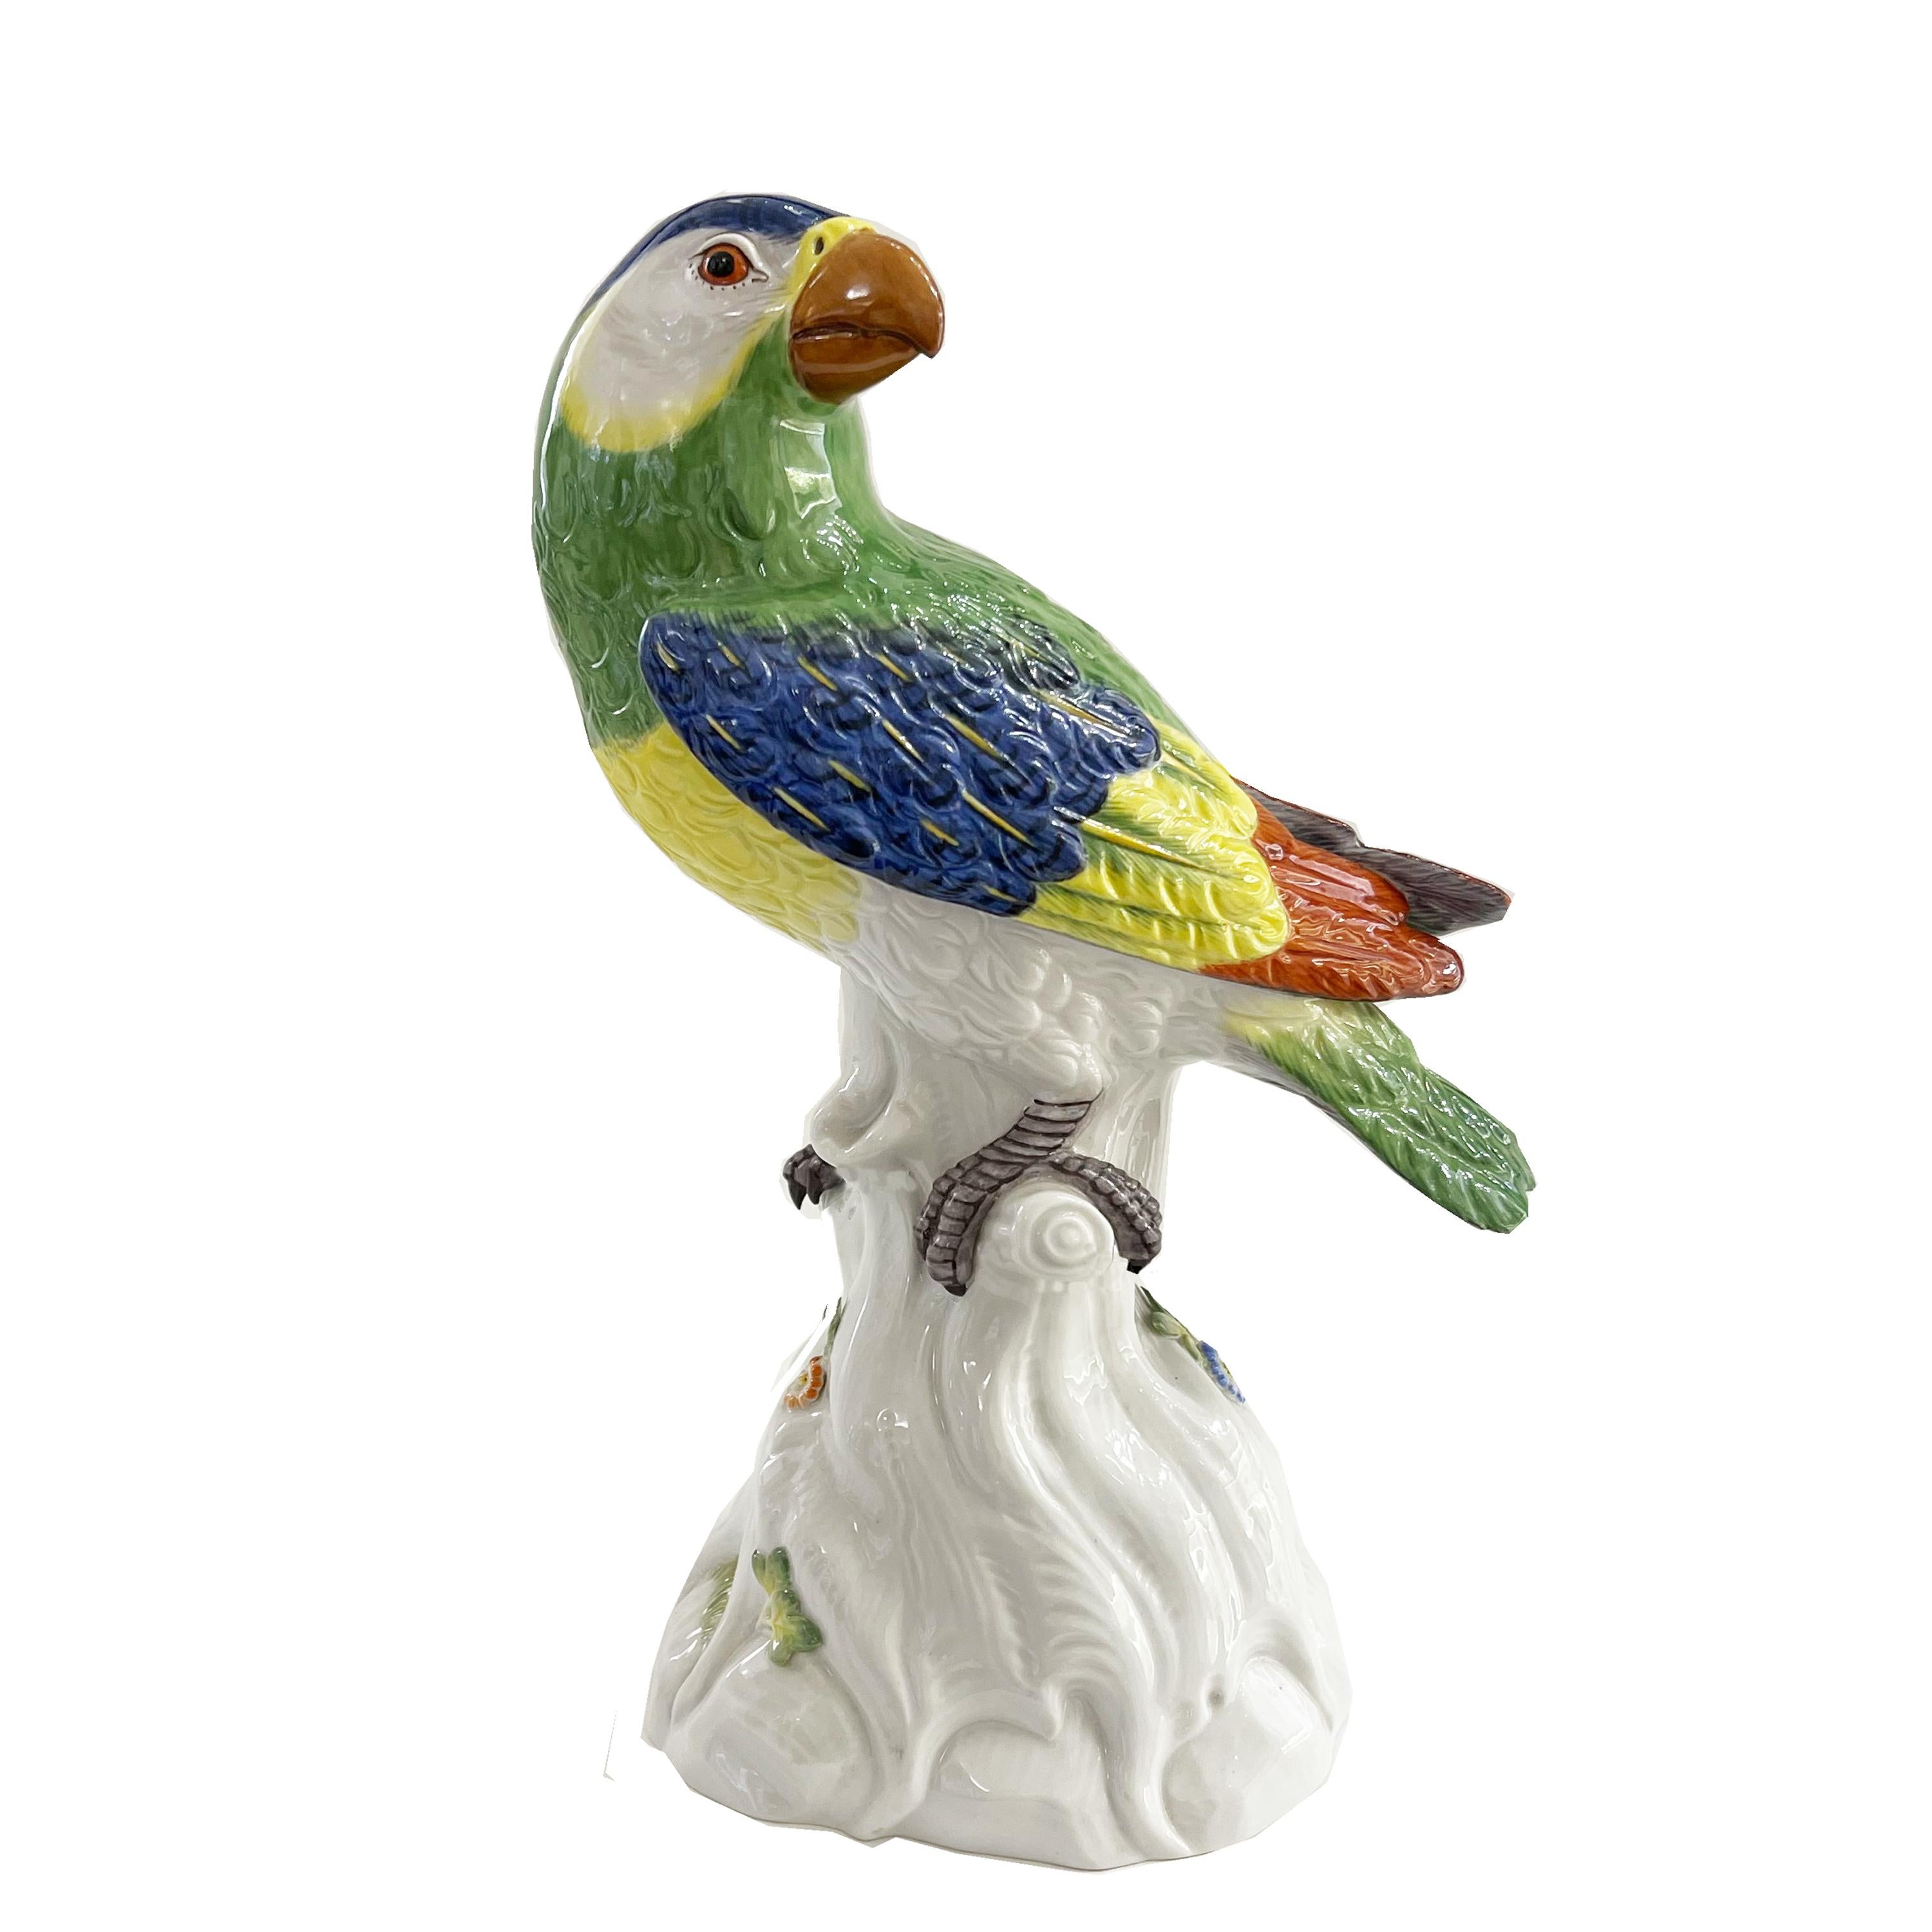 Ce magnifique perroquet a été fabriqué par la manufacture de Meissen, peut-être la plus ancienne et la plus prestigieuse manufacture de porcelaine d'Europe, d'après le modèle créé par Kandler dans les années 1700.
En 1731, le Meissen  a inauguré un